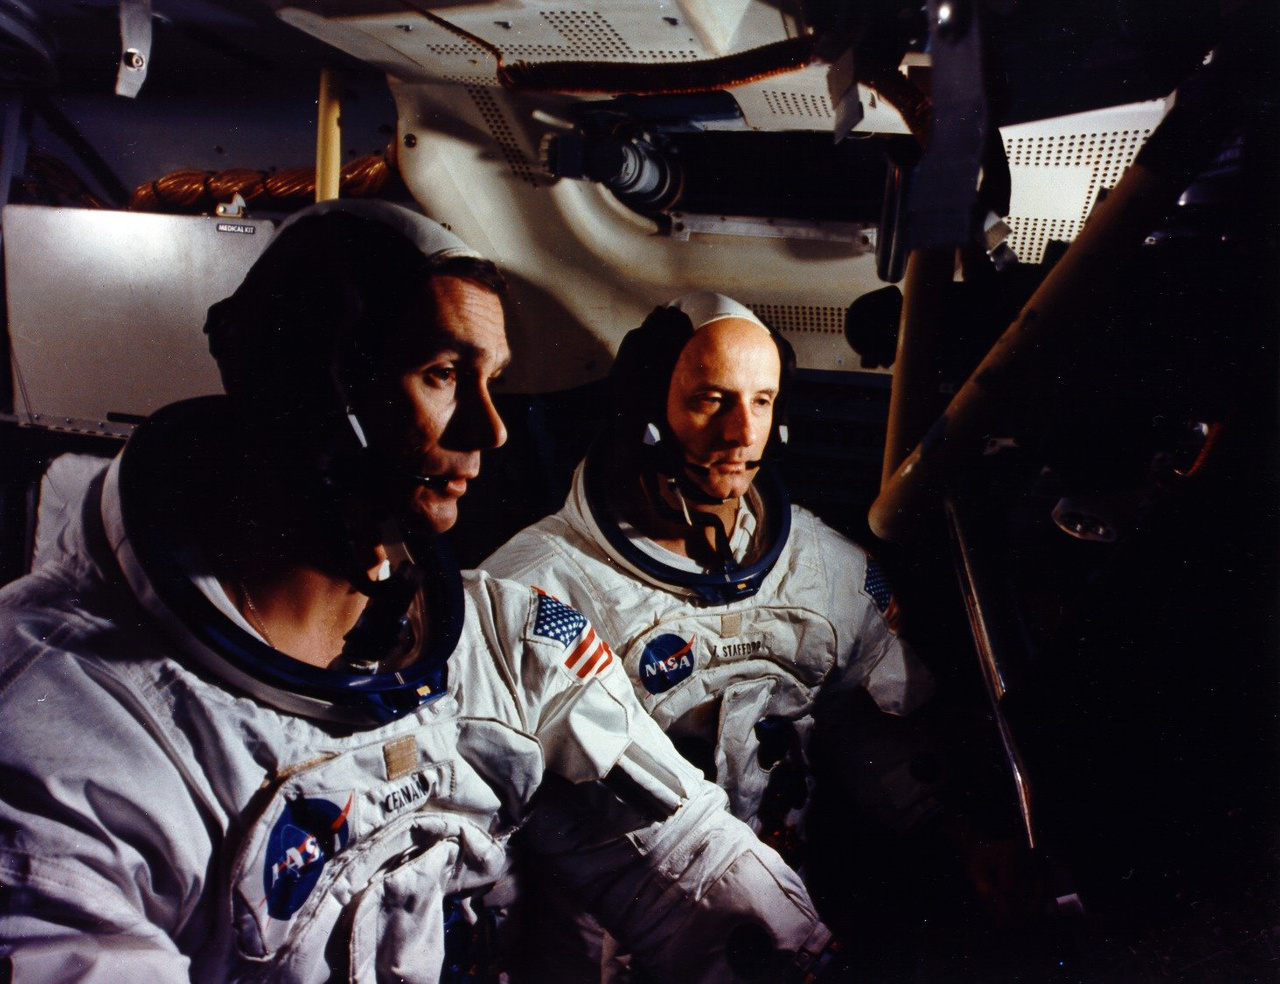 Az Apollo-10 küldetés két tagja szimulációs tréningen . Stafford a parancsnok, Cernan a holdkomppilóta.